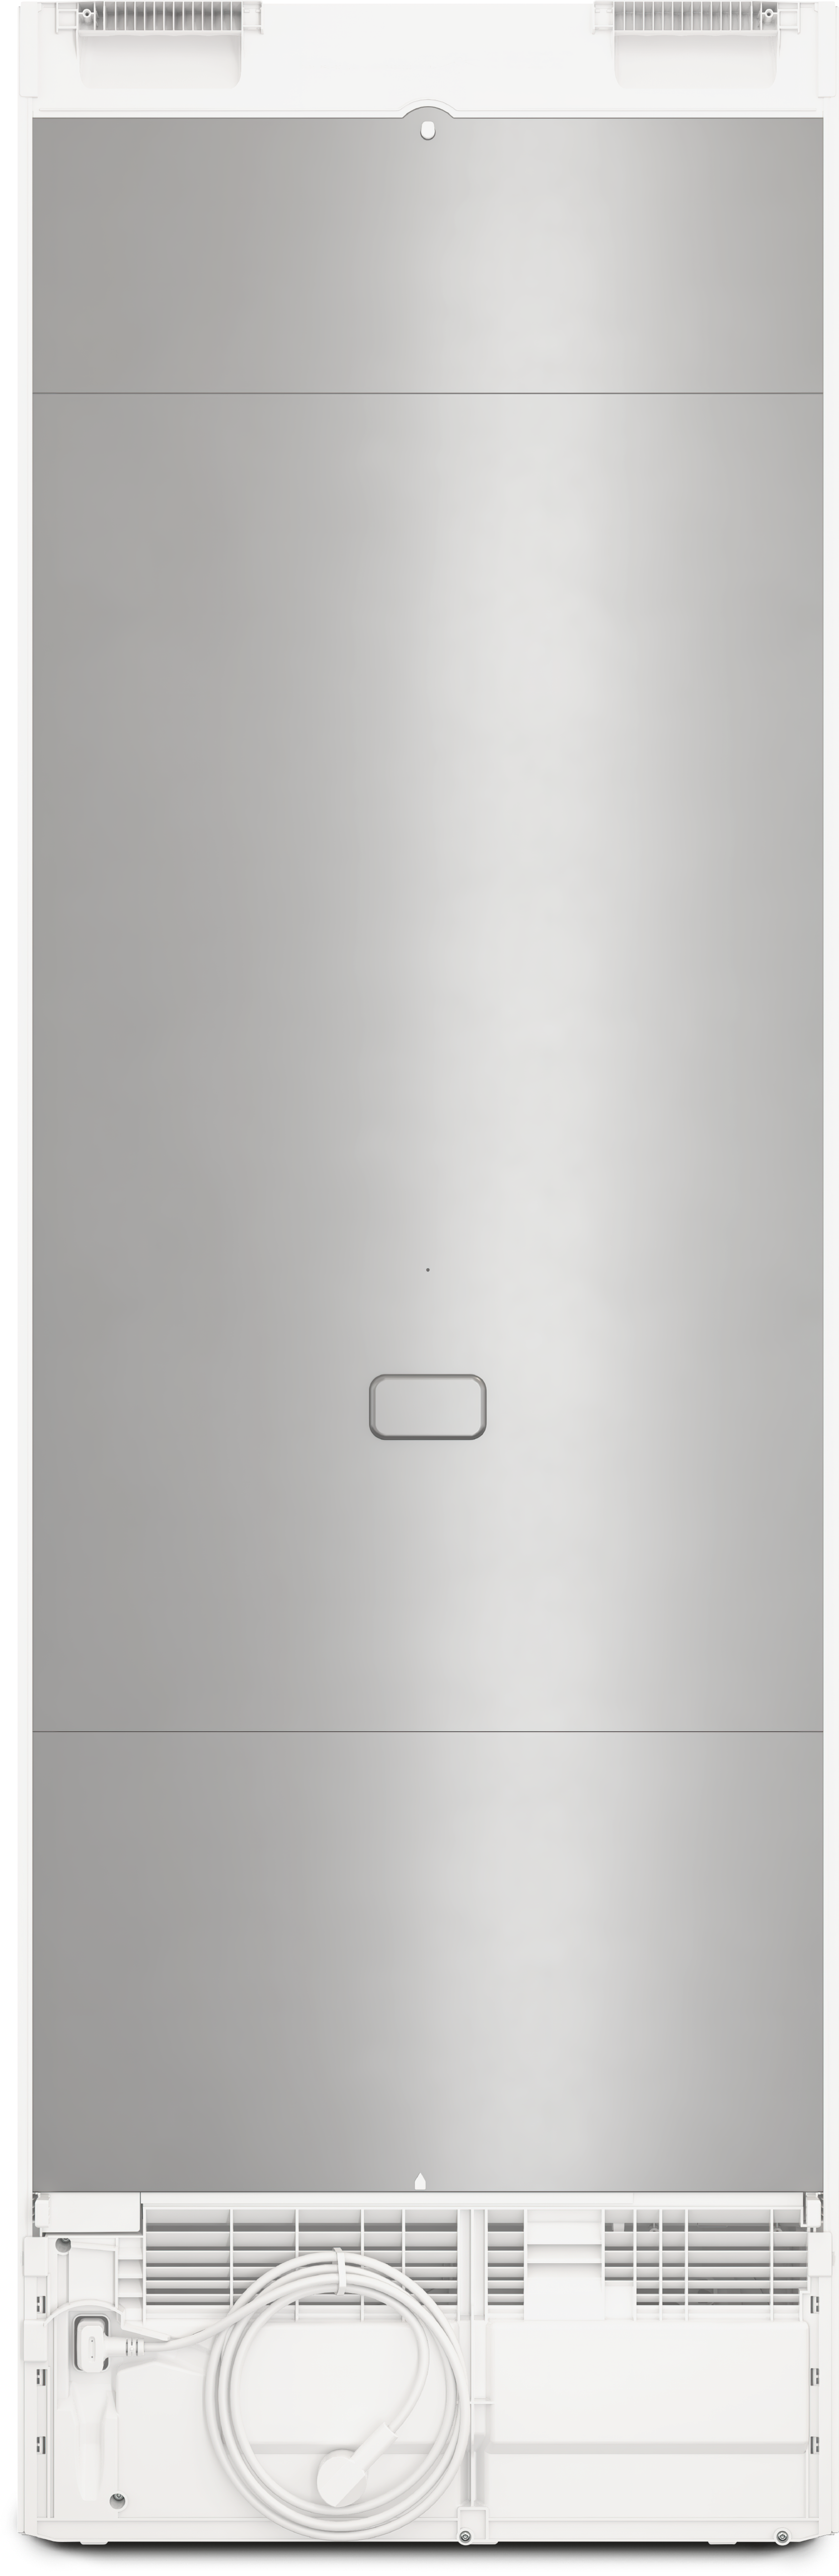 Refrigeration - KS 4383 DD White - 5